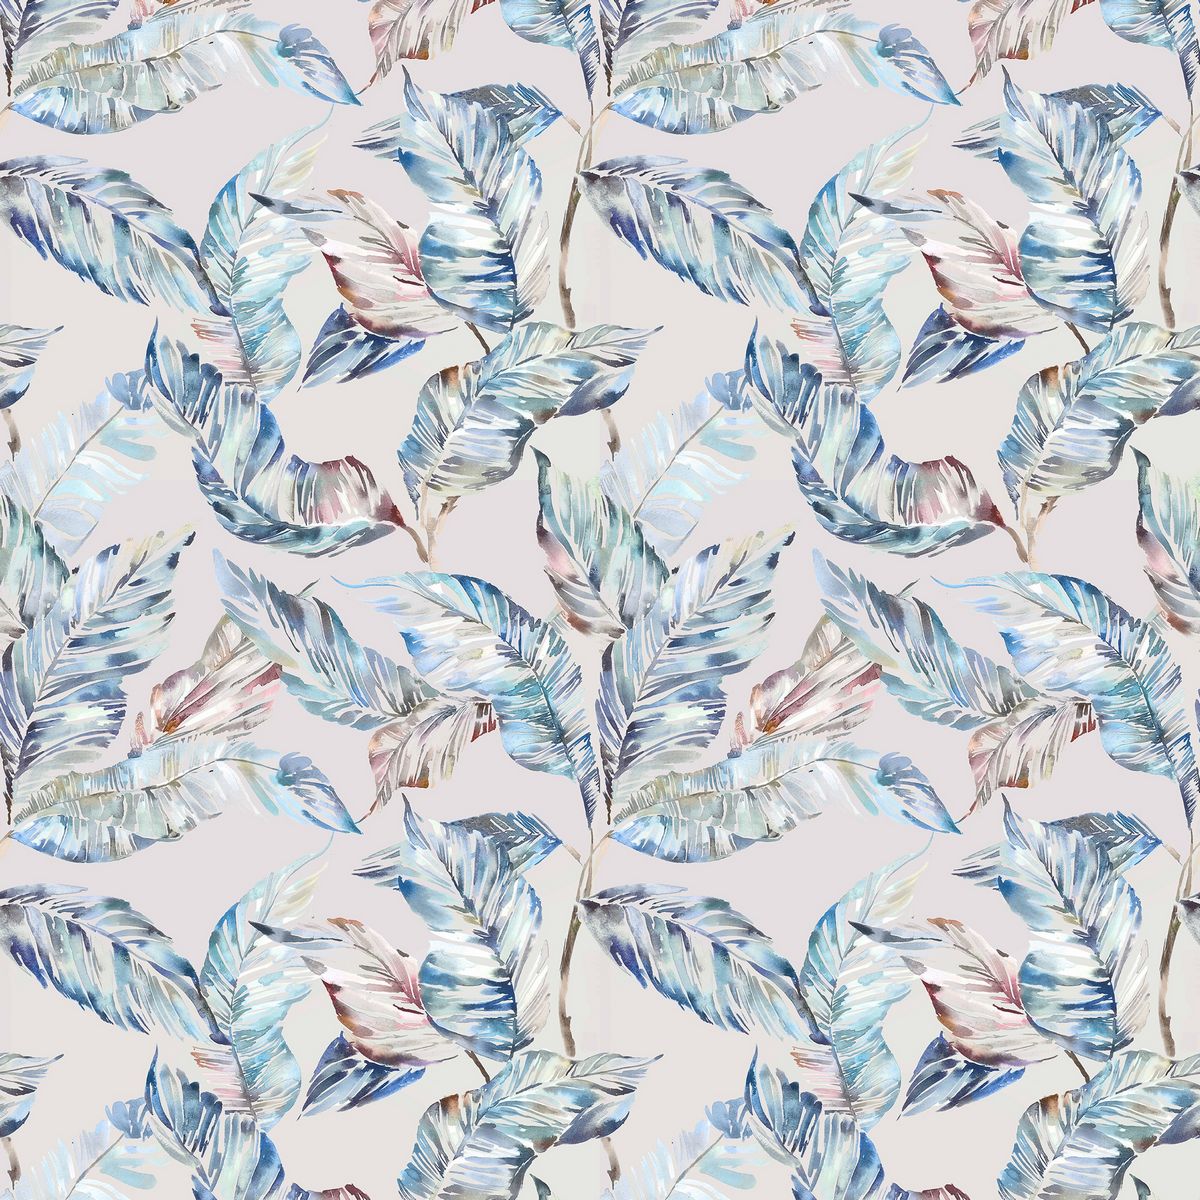 Mizuna Cobalt Fabric by Voyage Maison